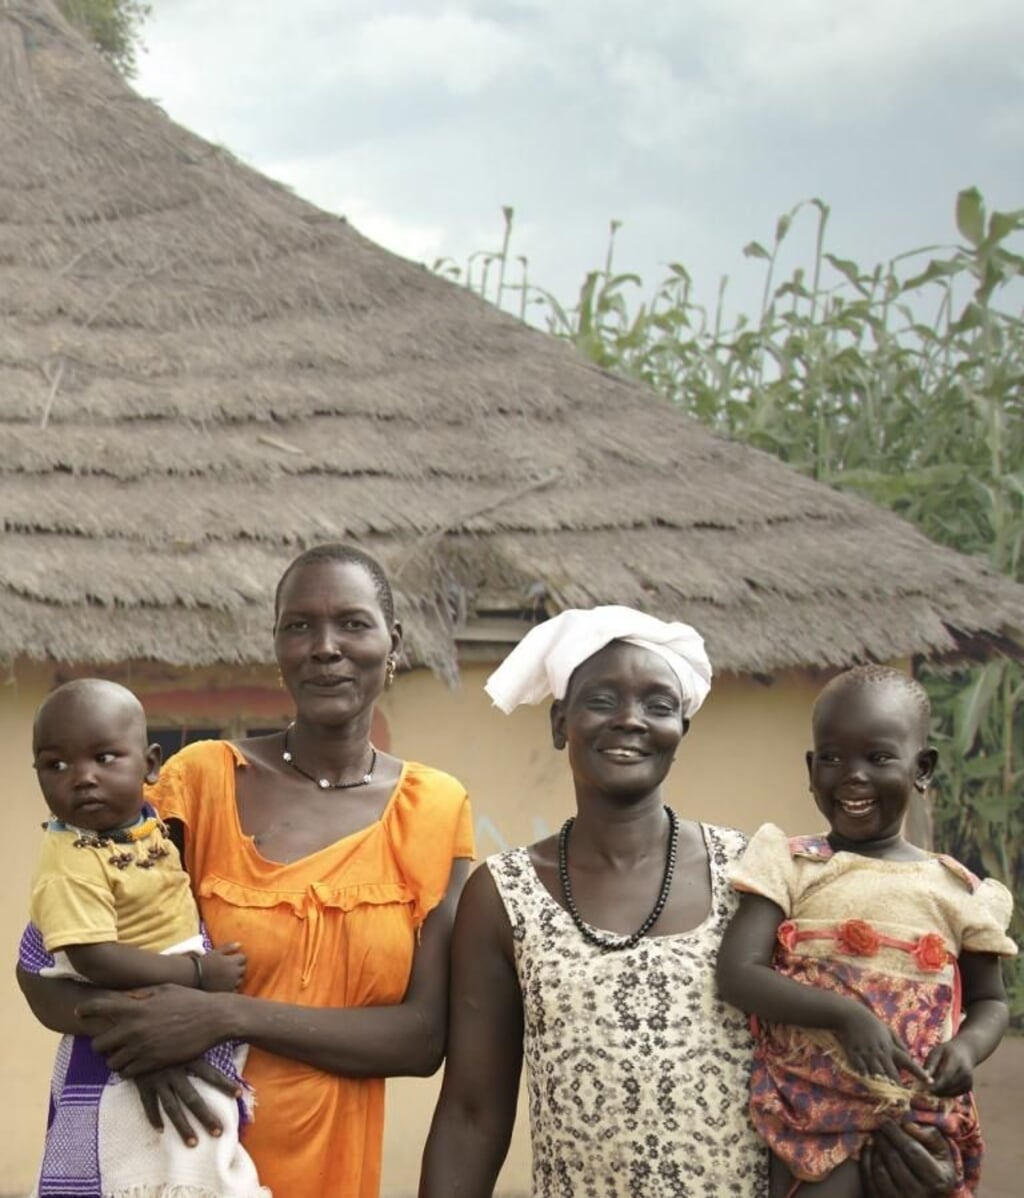 Voor Awuk en Ajak in Zuid-Soedan is overleven een hele klus. Ze kunnen alle steun gebruiken om een stabiel bestaan op te bouwen.